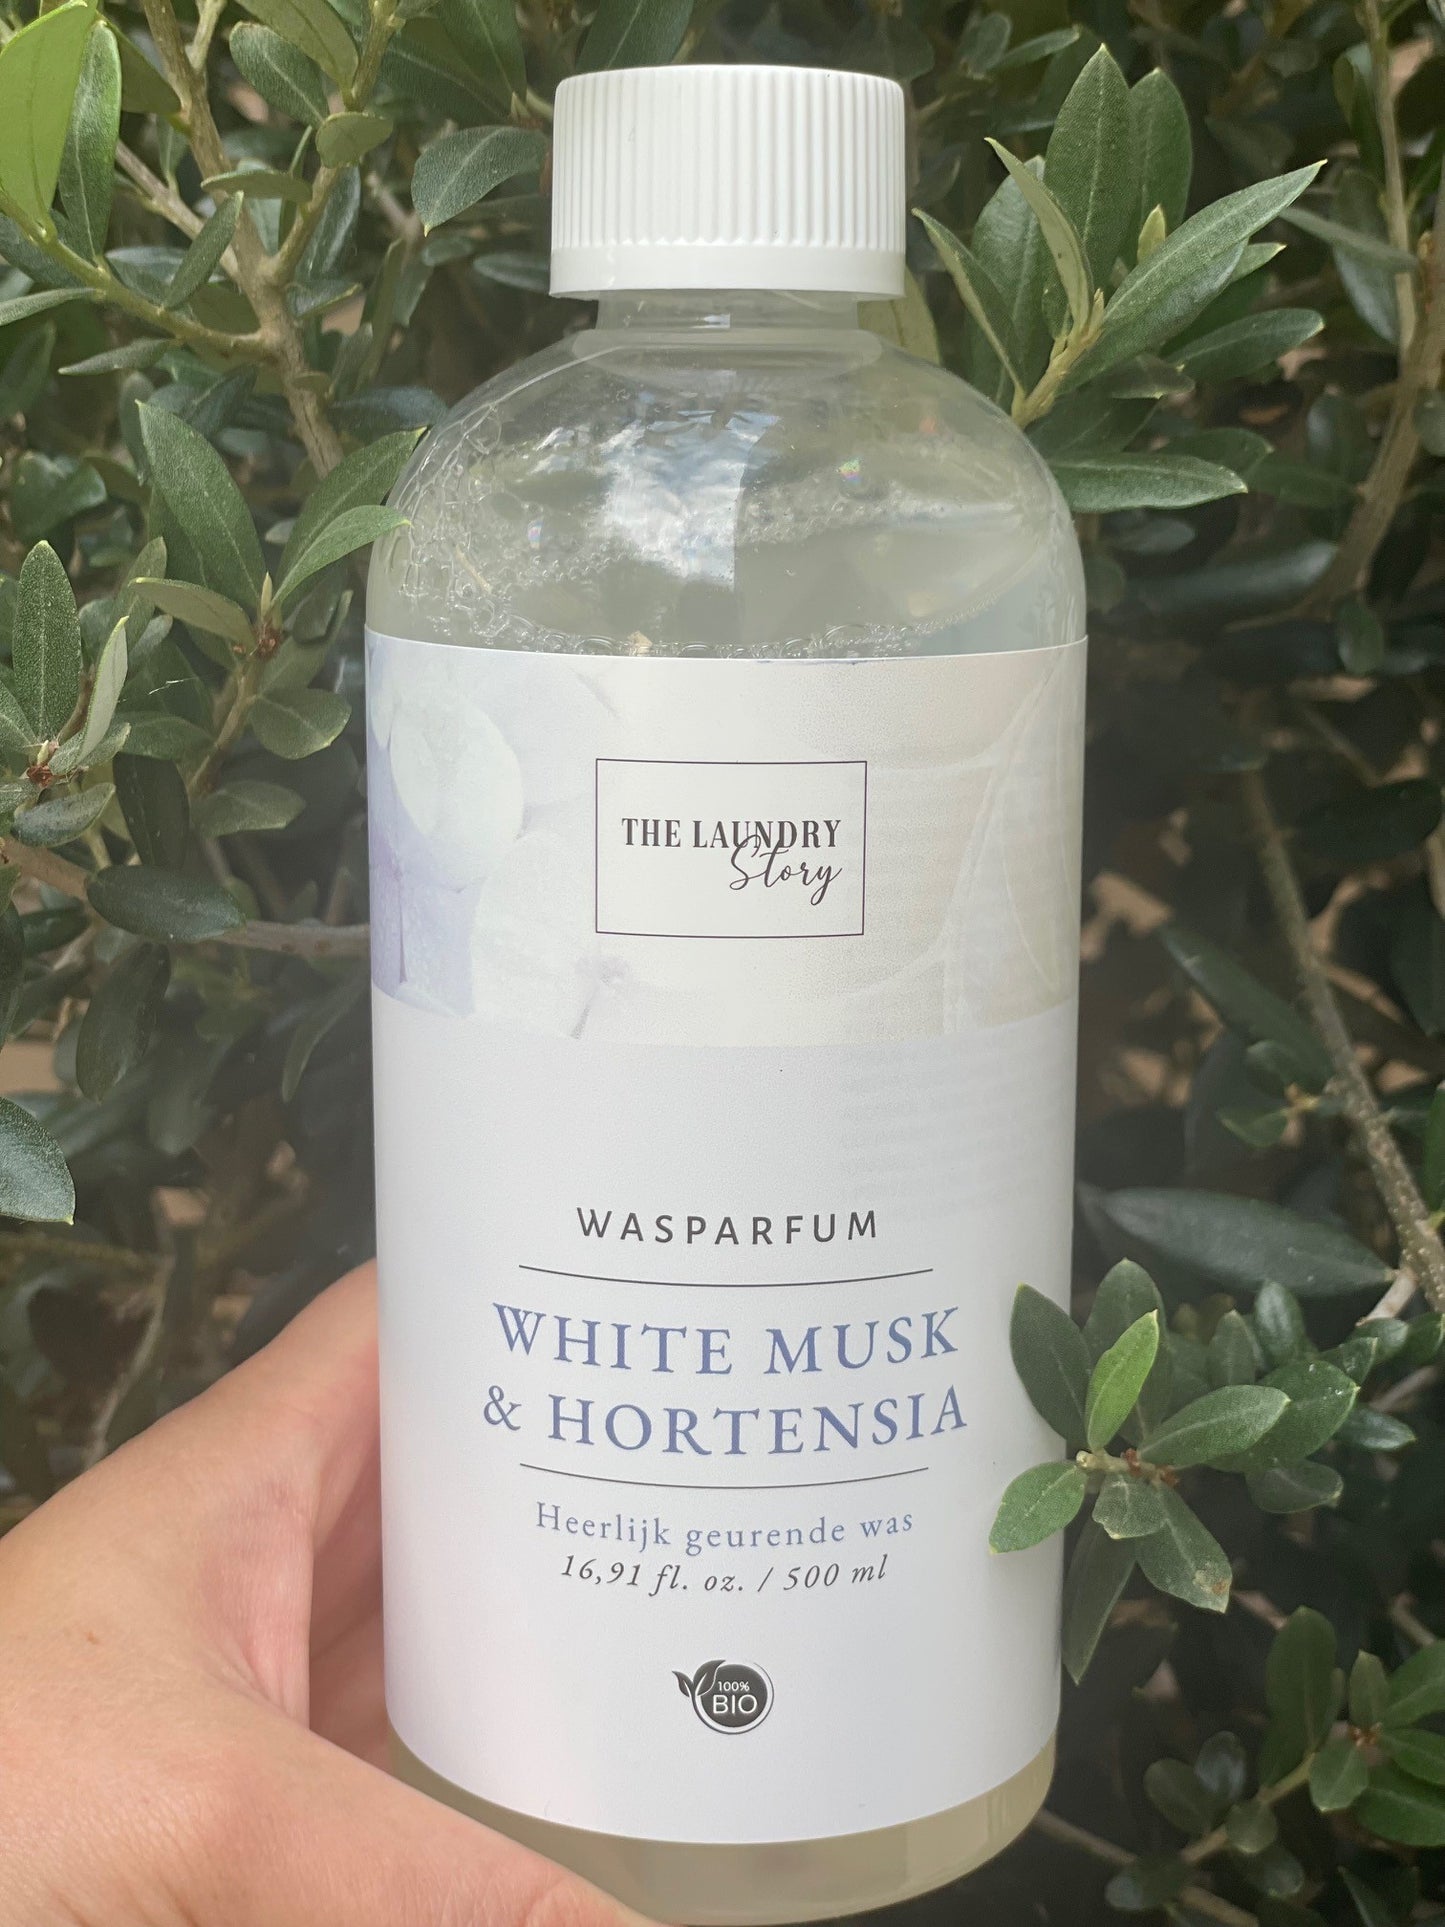 Wasparfum | The Laundry Story 100% BIO "White Musk & Hortensia"